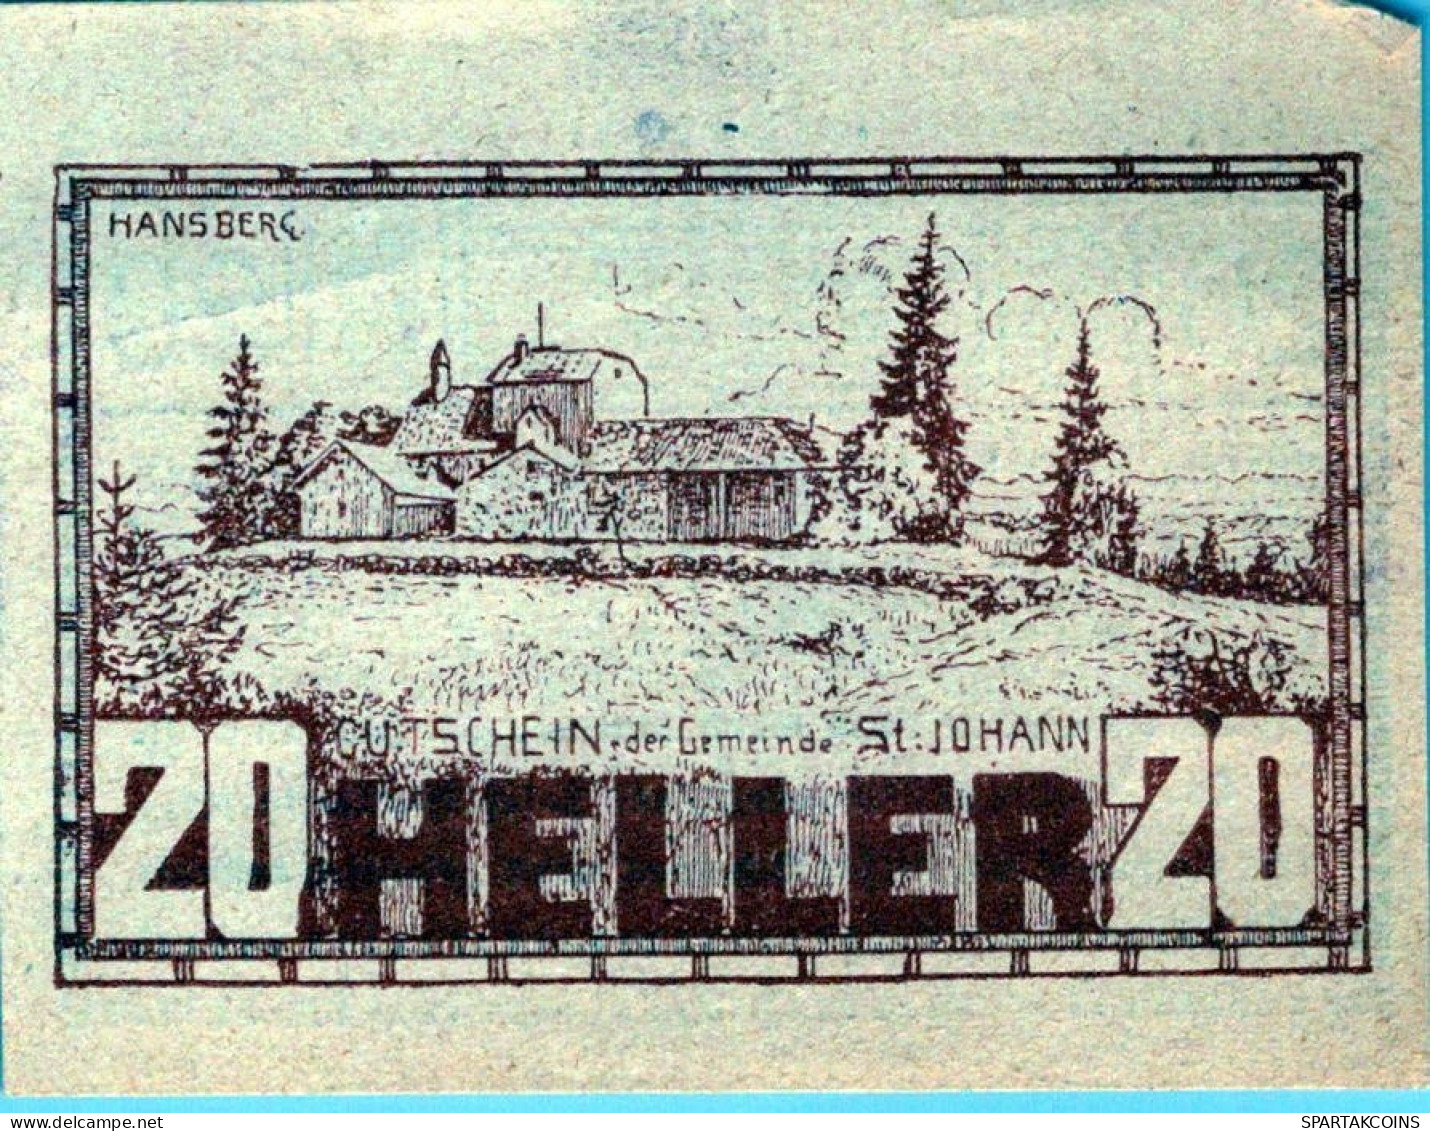 20 HELLER 1920 Stadt SANKT JOHANN AM WIMBERG Oberösterreich Österreich #PE683 - [11] Local Banknote Issues